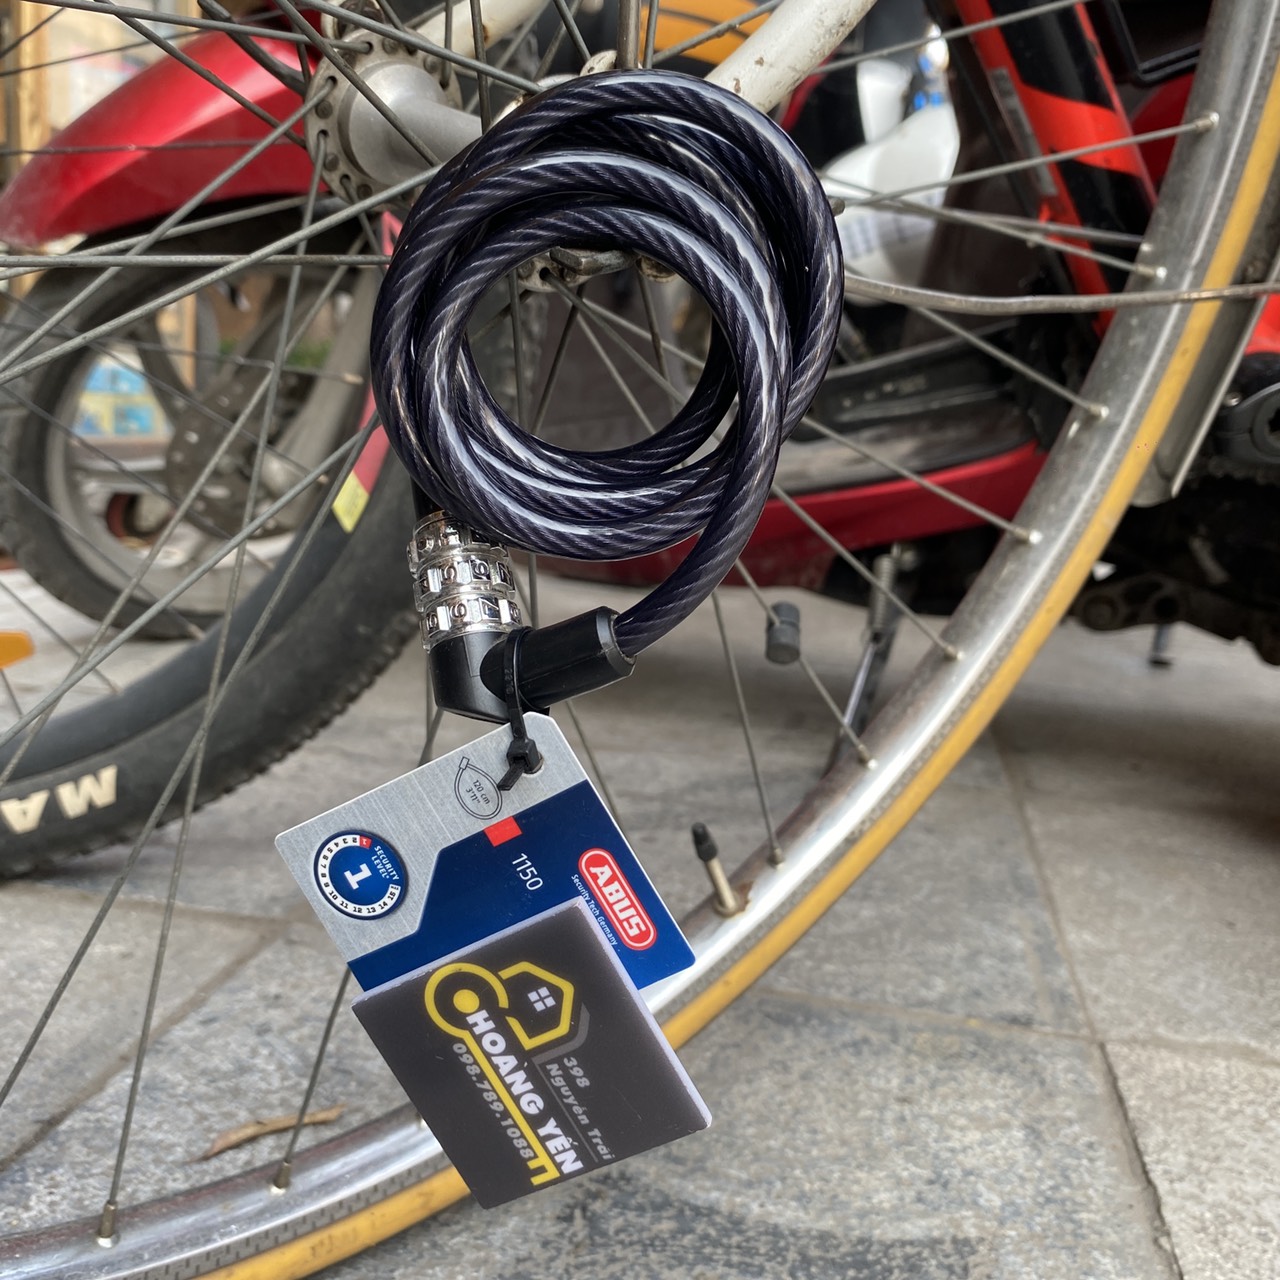 Khóa dây xe đạp dùng mã số chính hãng ABUS 1150 - CHLB Đức tặng khóa tủ cá nhân